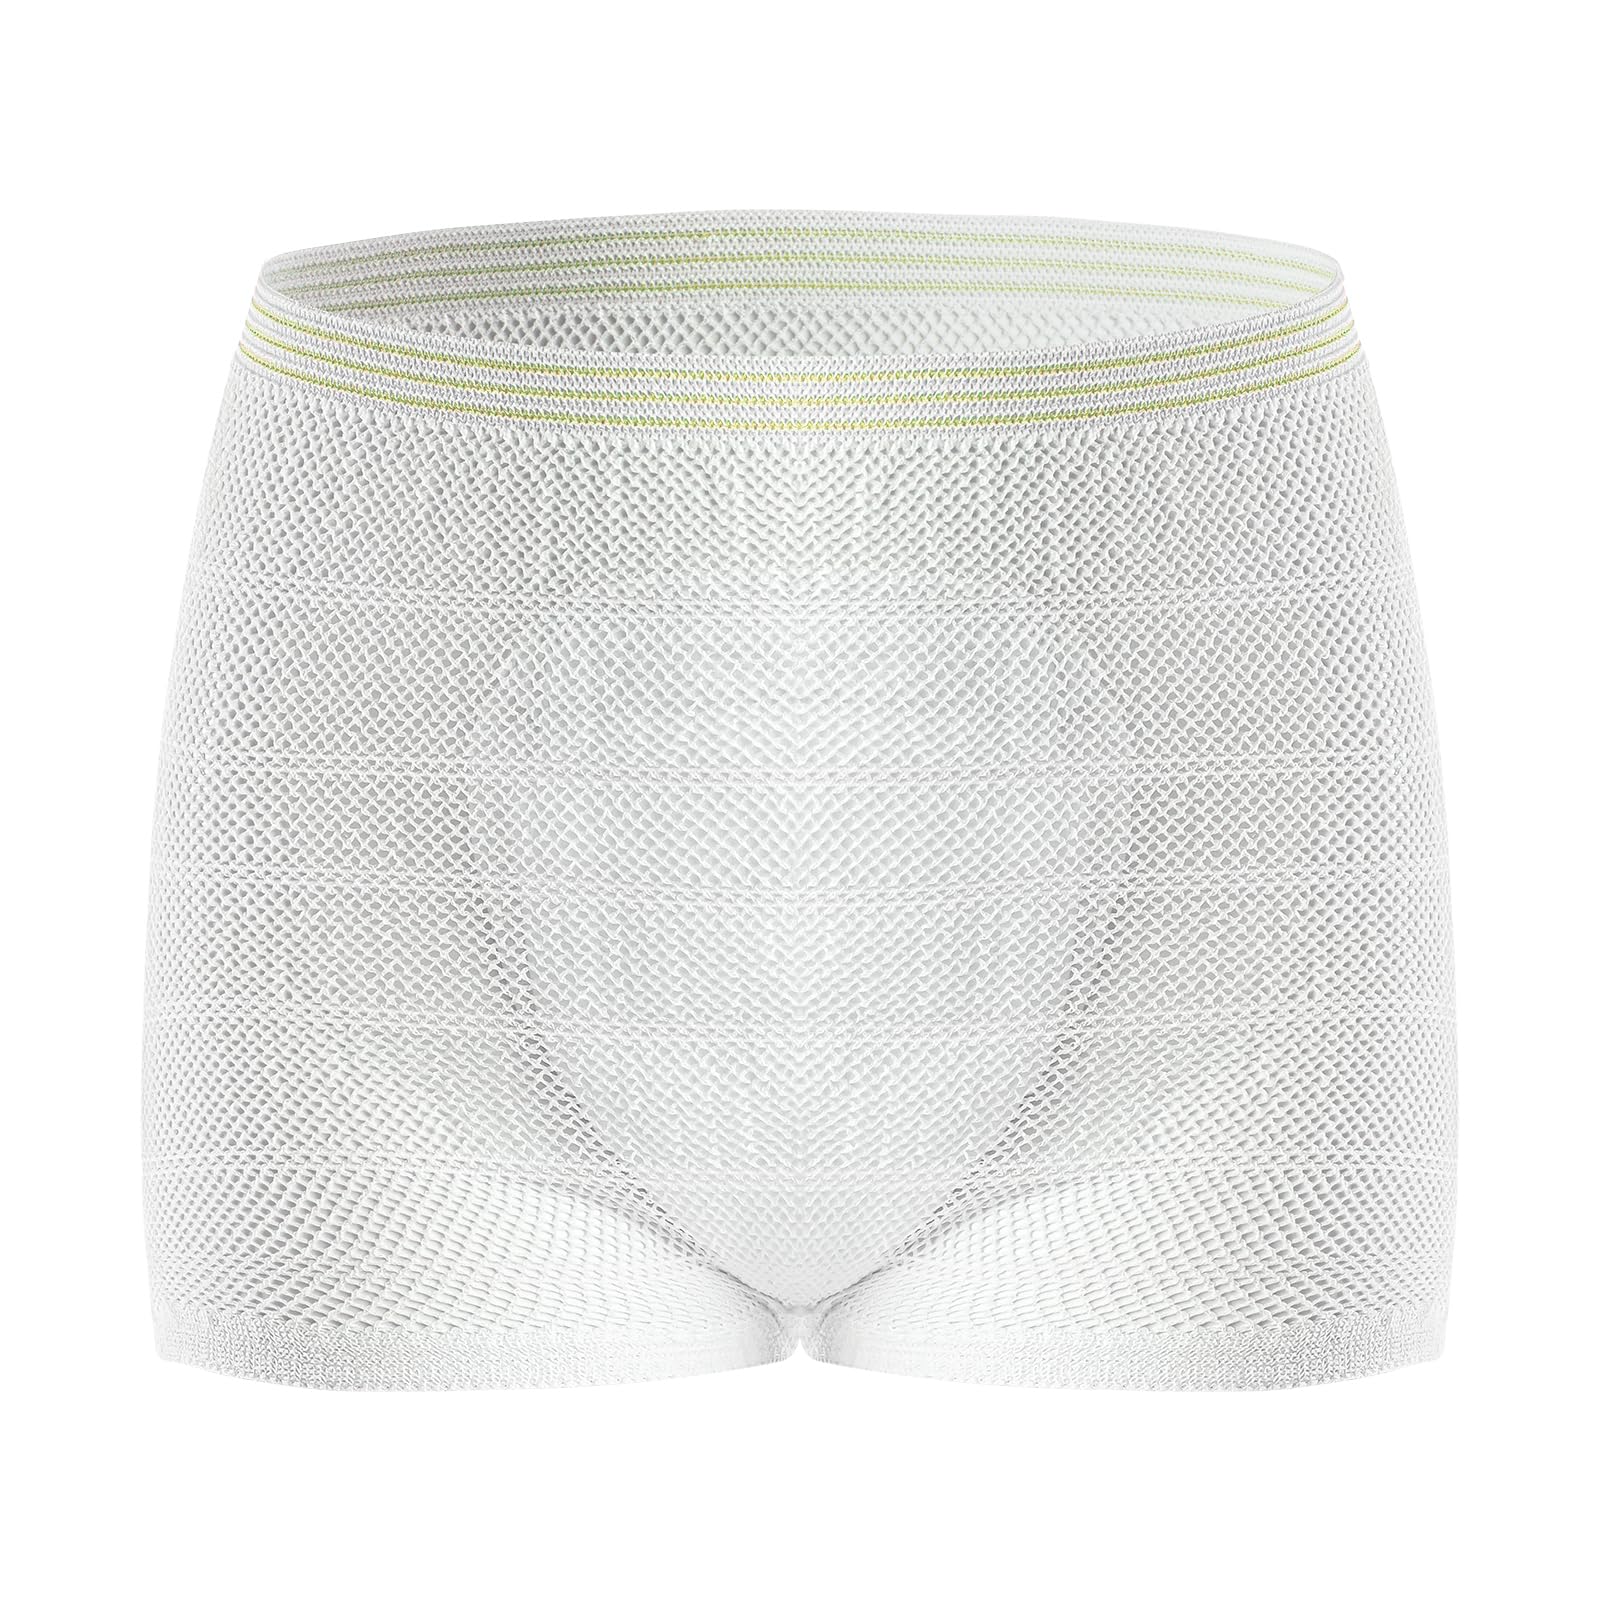 HANSILK Mesh Postpartum Underwear High Waist Disposable Post Bay C